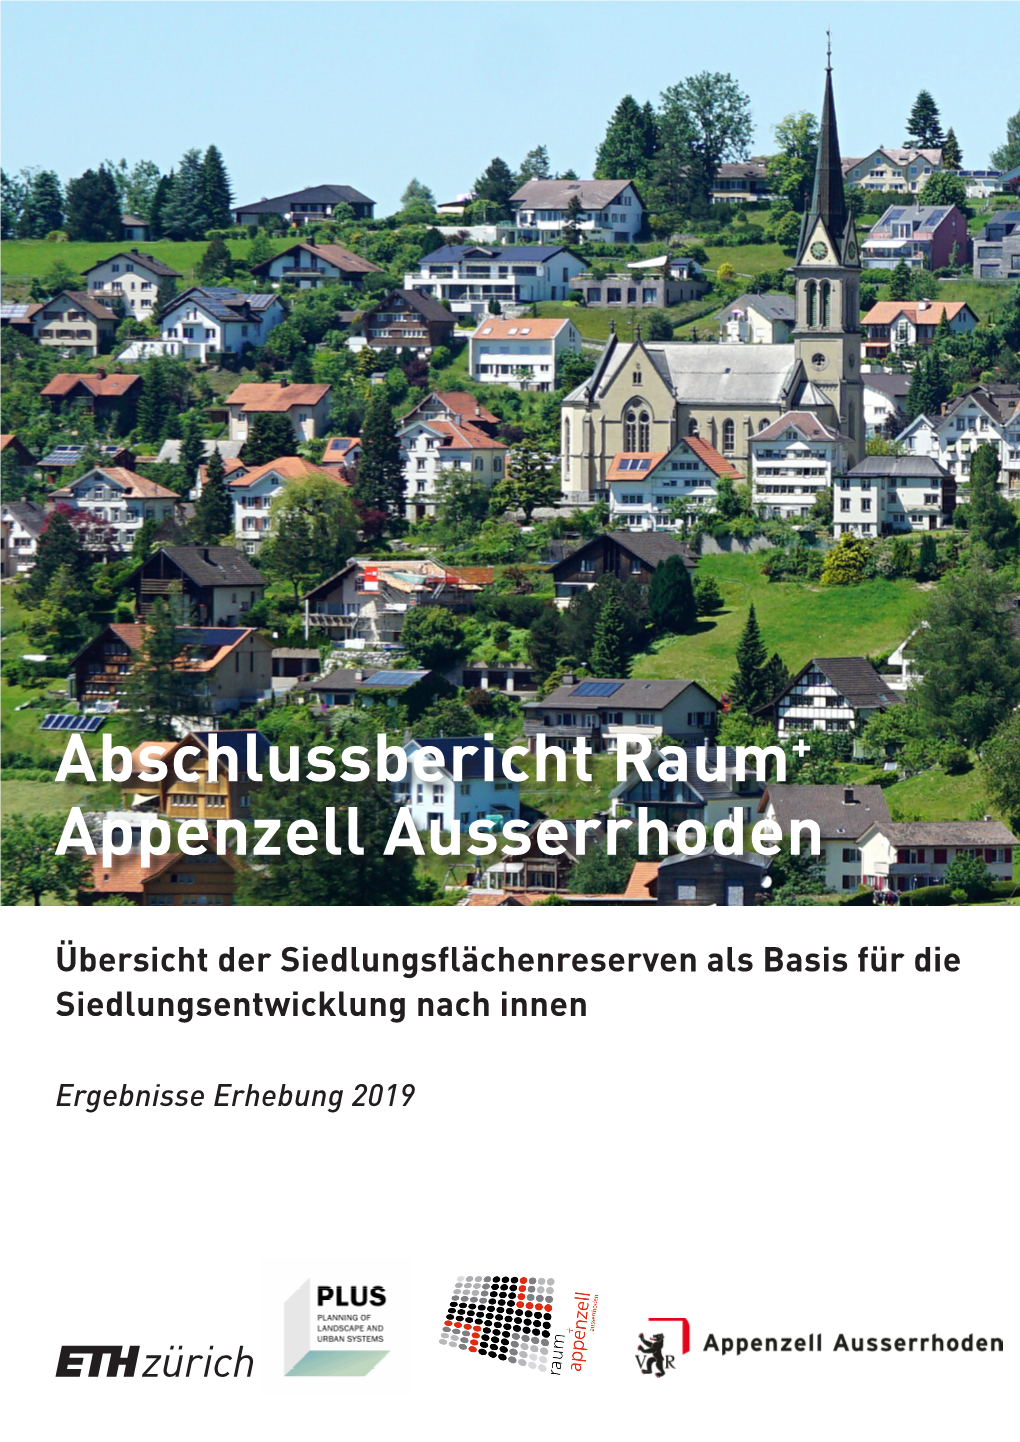 Abschlussbericht Raum + Appenzell Ausserrhoden